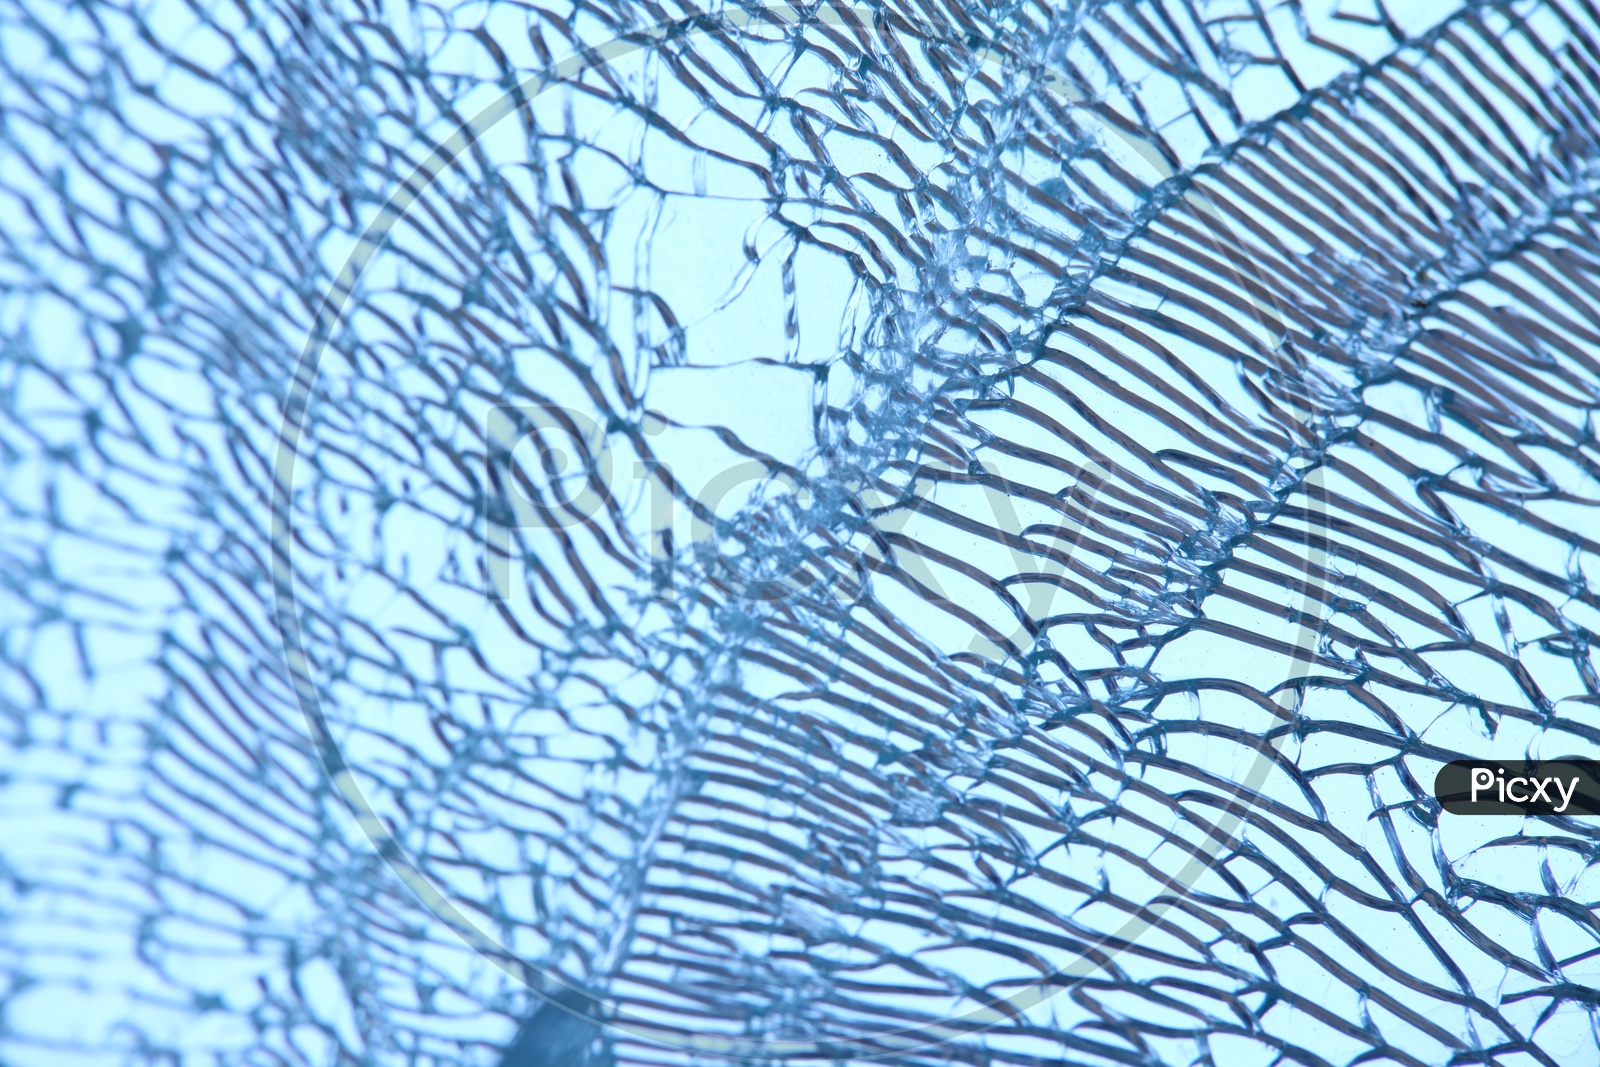 Breaking Glass Texture